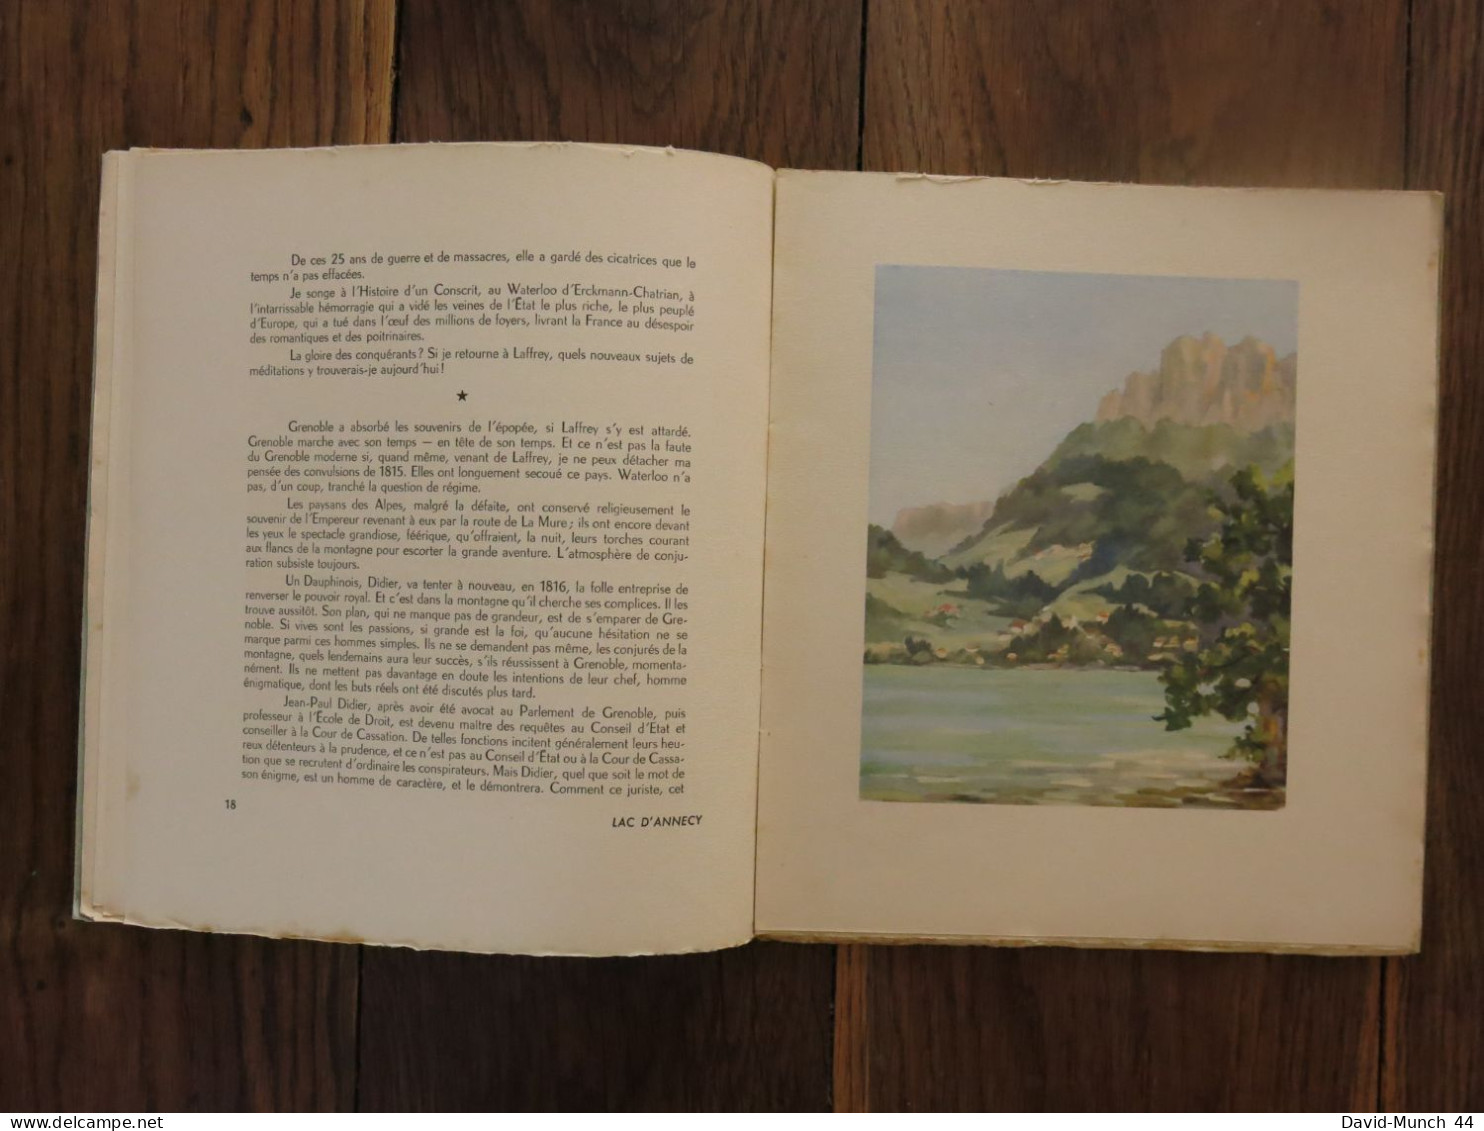 Visions et images de France 1: Les Alpes de Jean Dauré et CH.-M. Chenu. Editions Jacques Vautrain. 1947